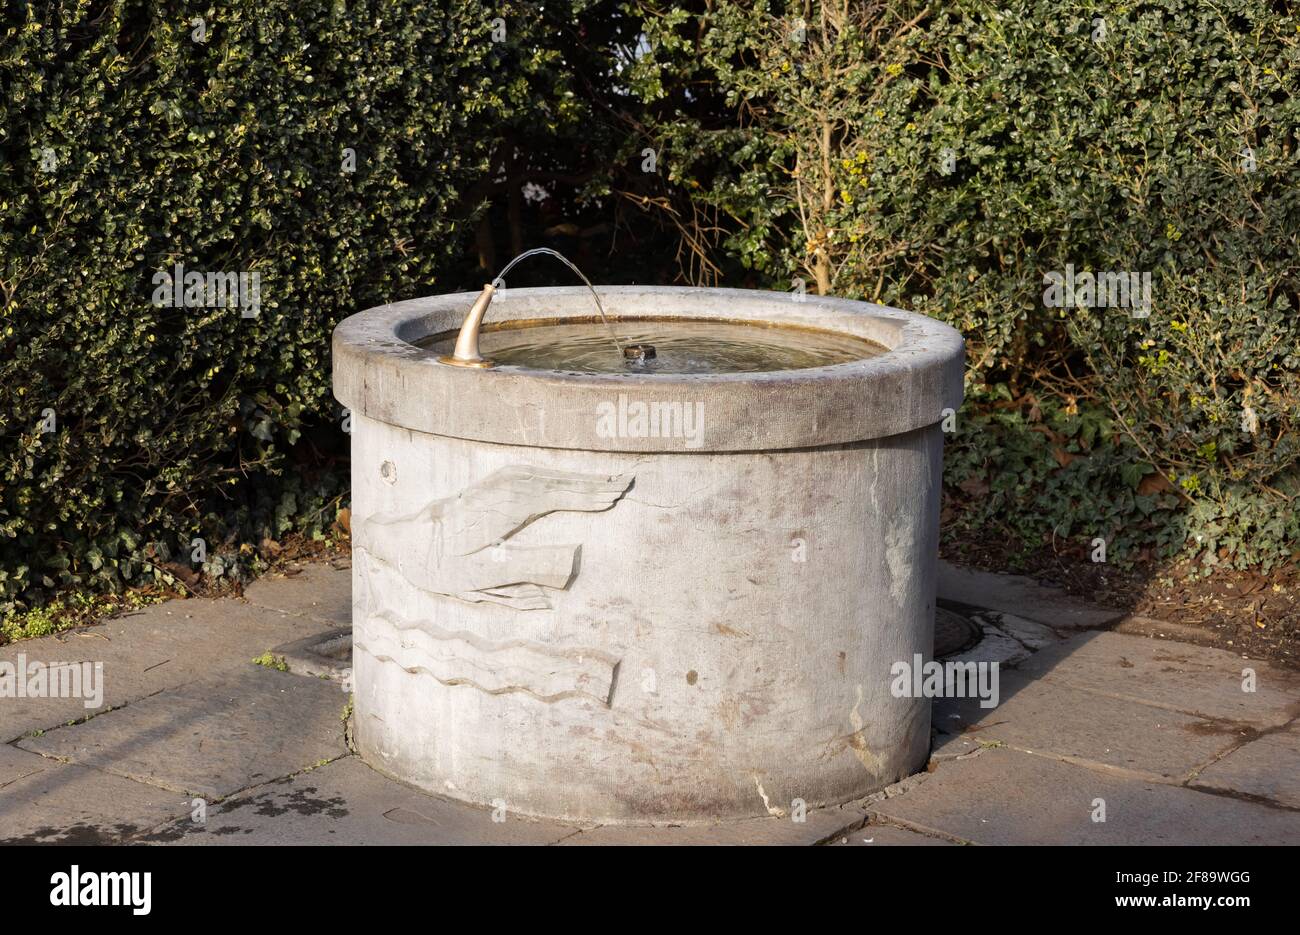 fontaine ronde en pierre brune avec mouette gravée et eau ondulée, le robinet d'eau est en service, de jour en jour, sans personne Banque D'Images